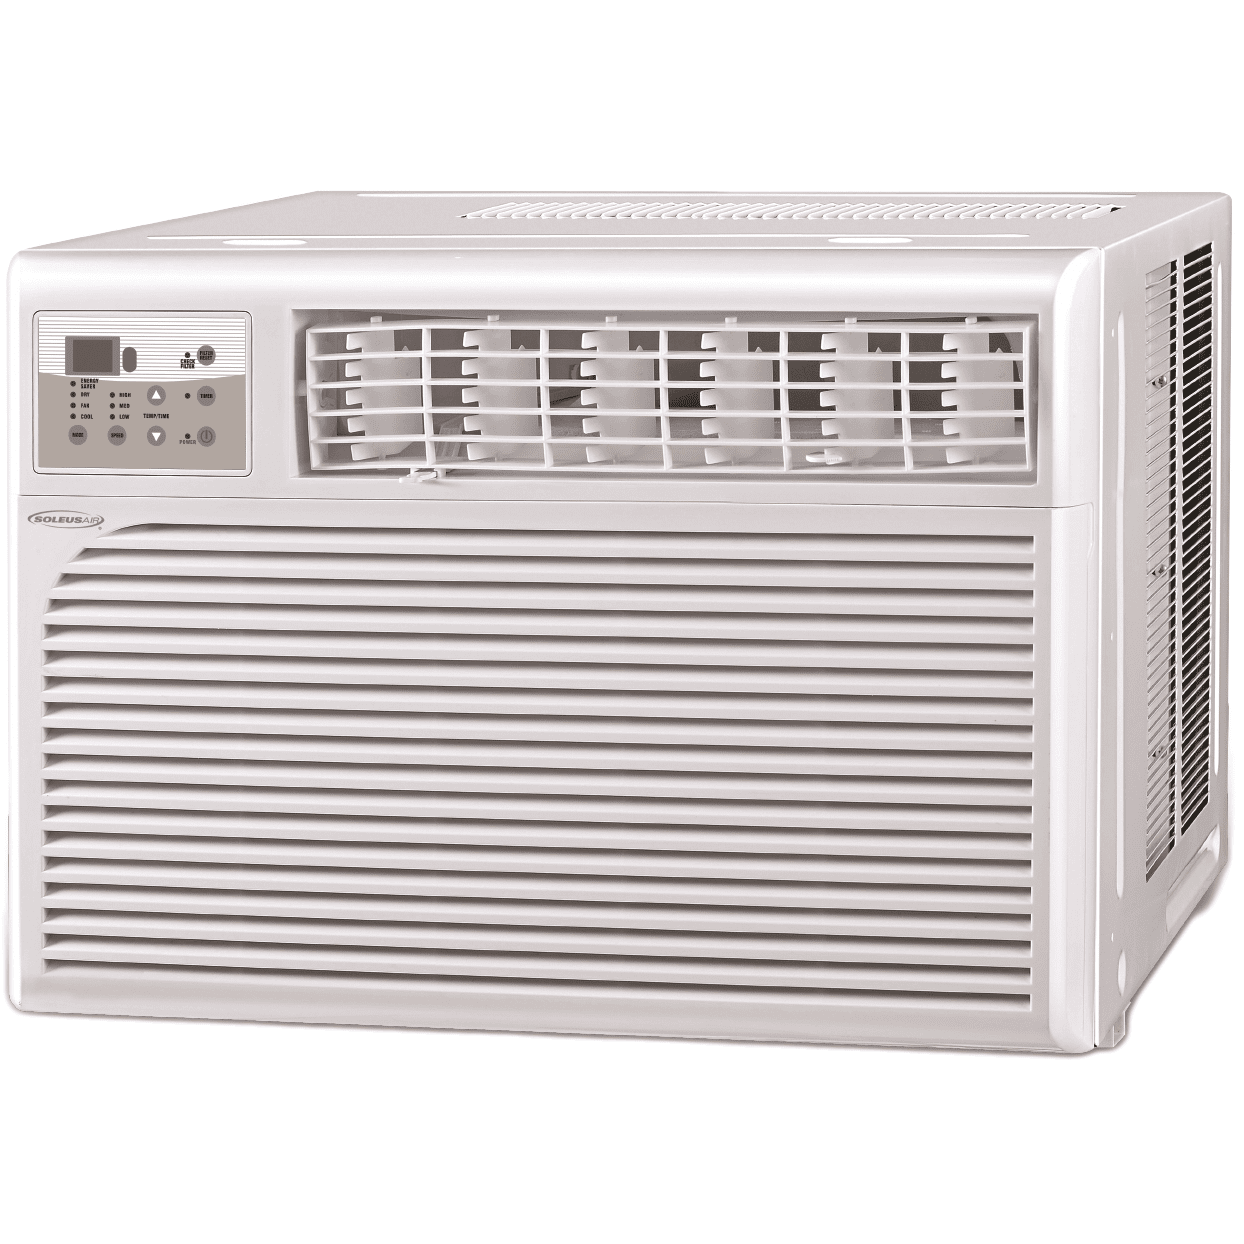 Soleus Air Hcc-w15es-01 15,000 Btu Window Air Conditioner